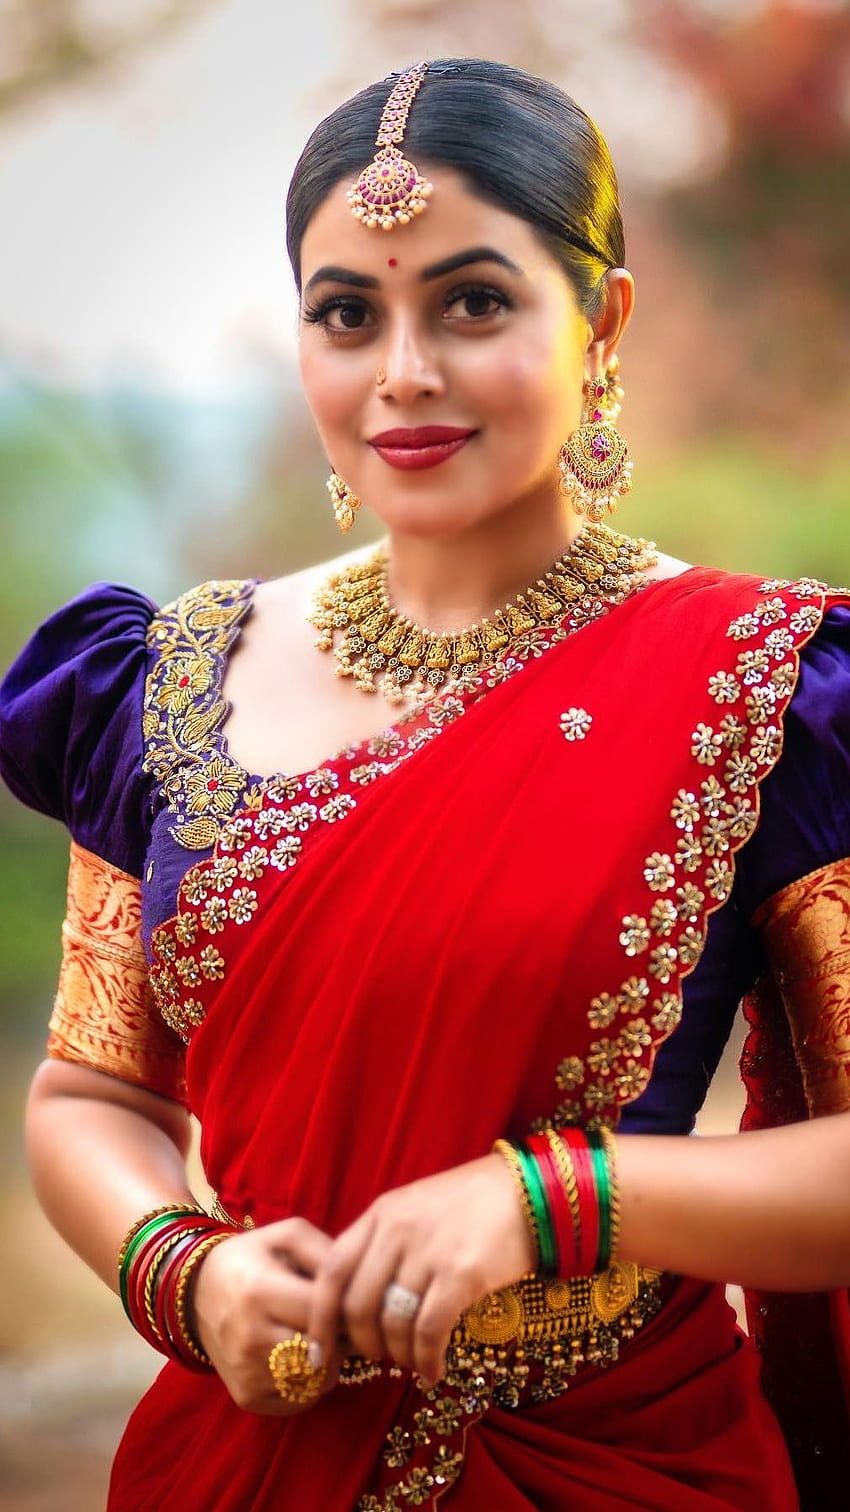 Poorna kasim, telugu aktorka, modelka, shamana kasim, piękna sari Tapeta na telefon HD